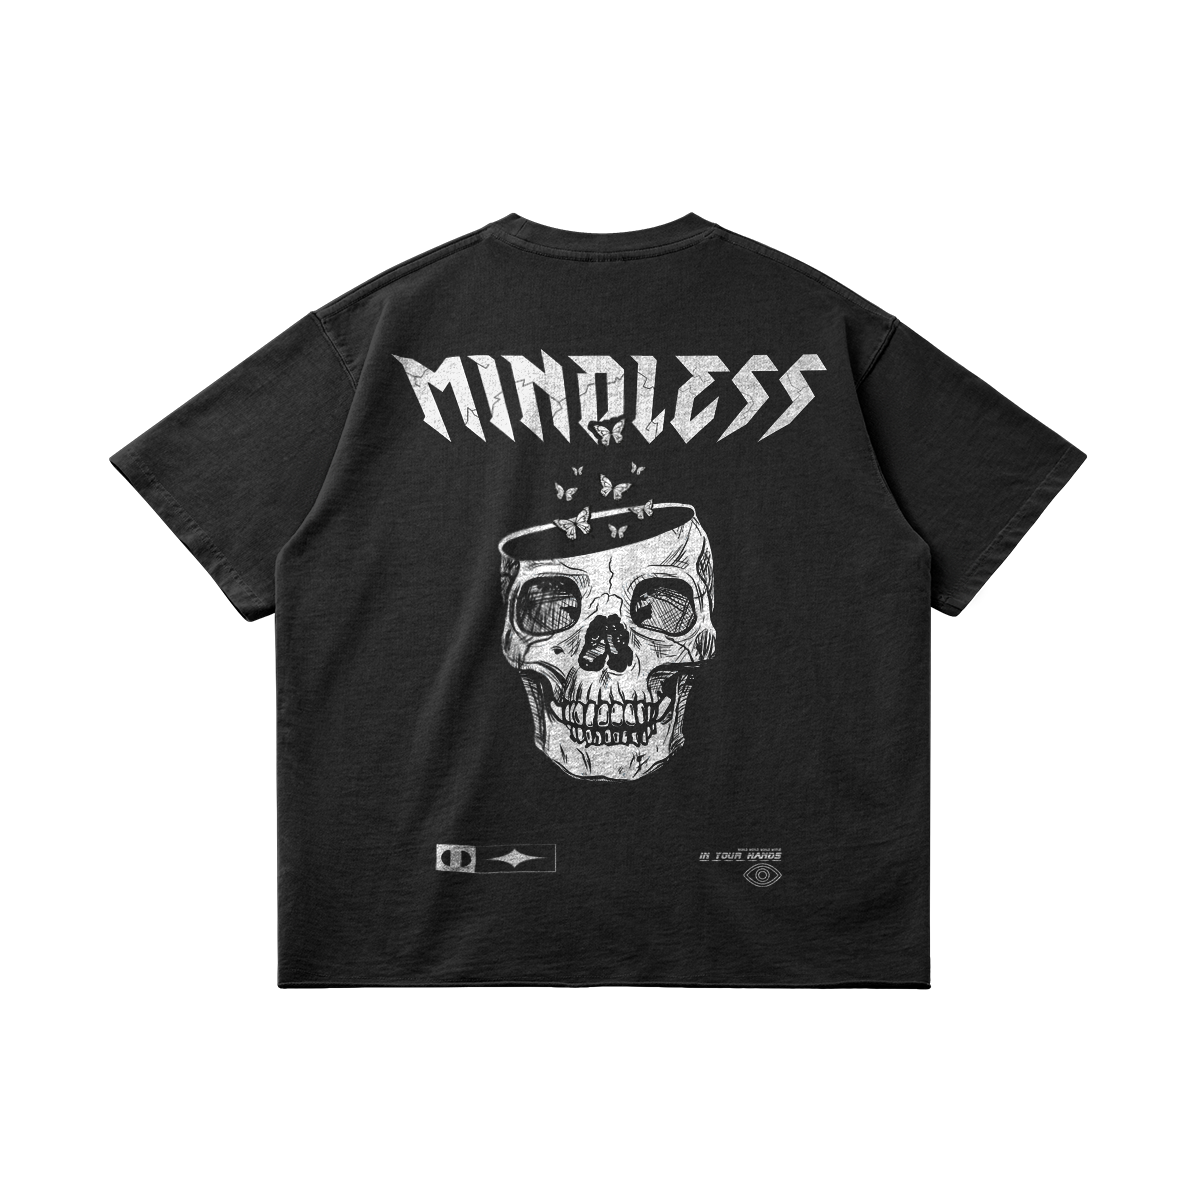 Mindless T-shirt